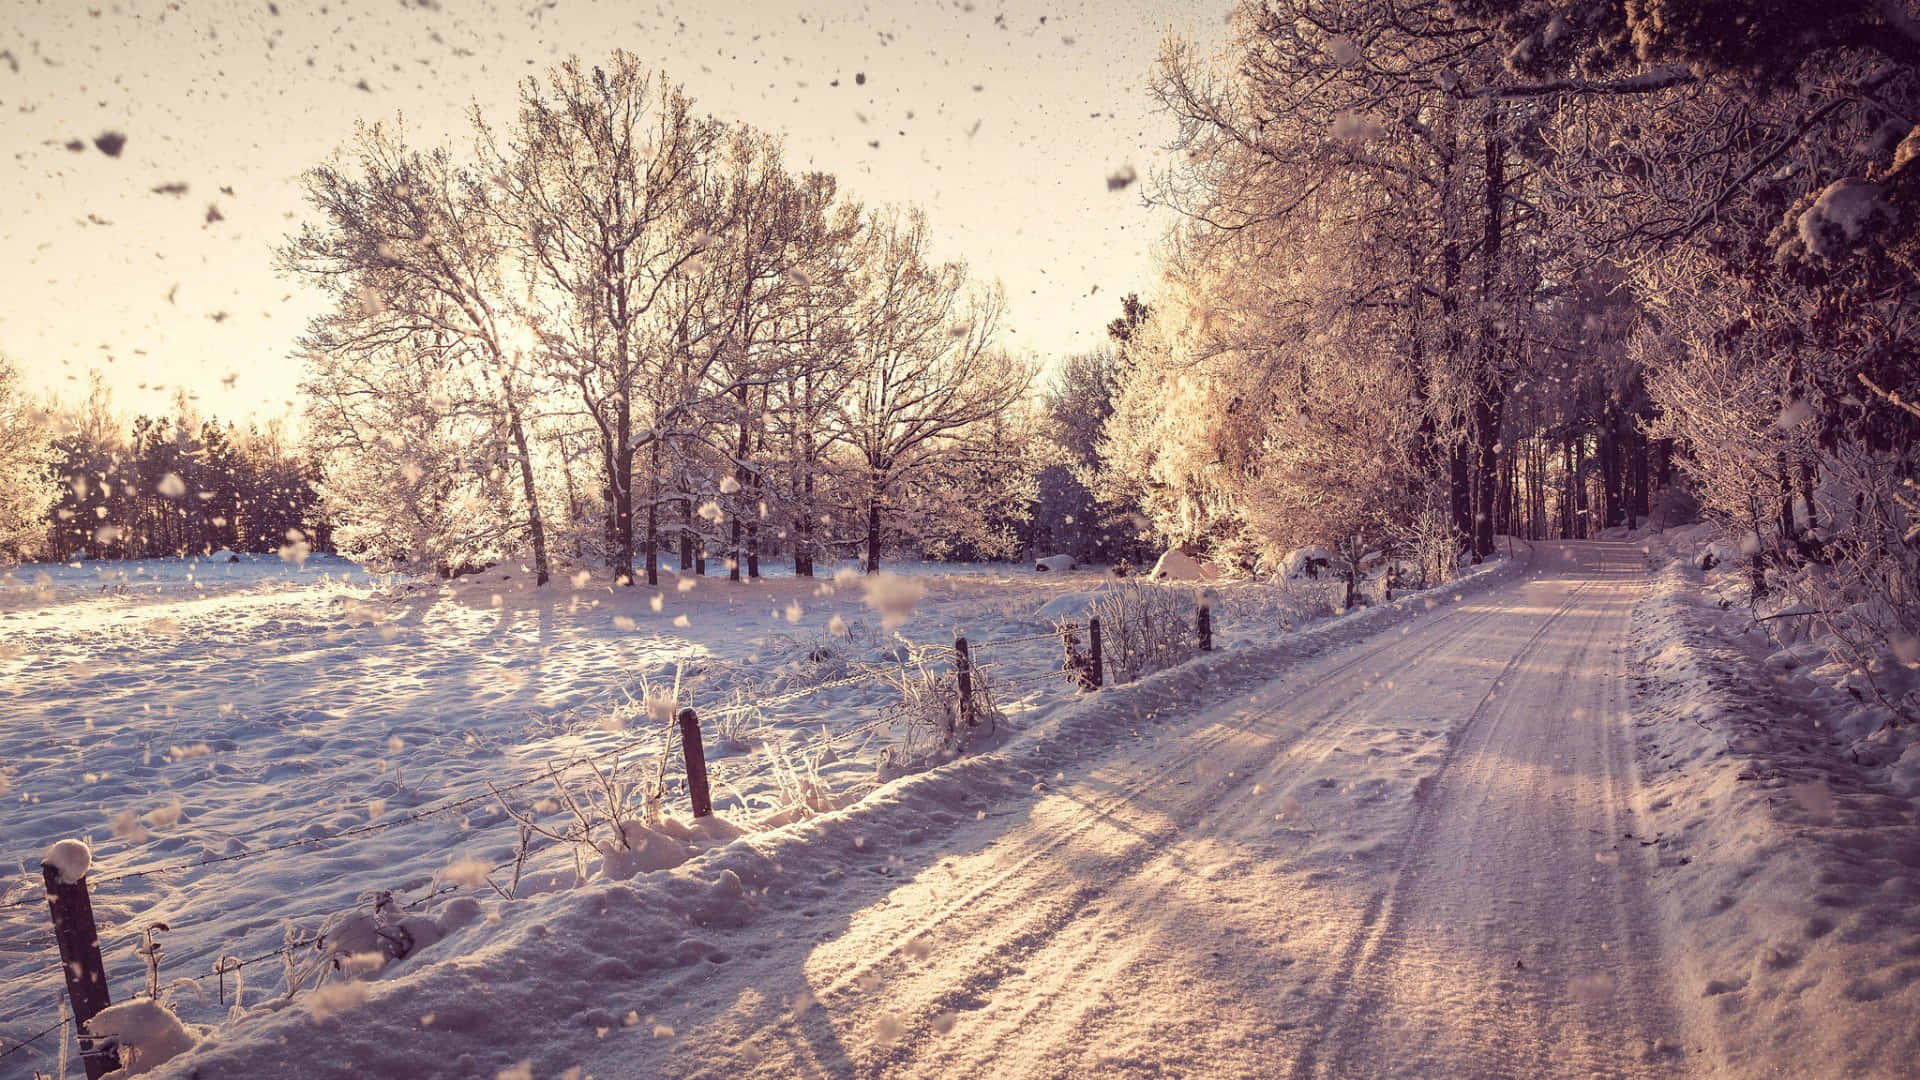 A Serene Winter Scene